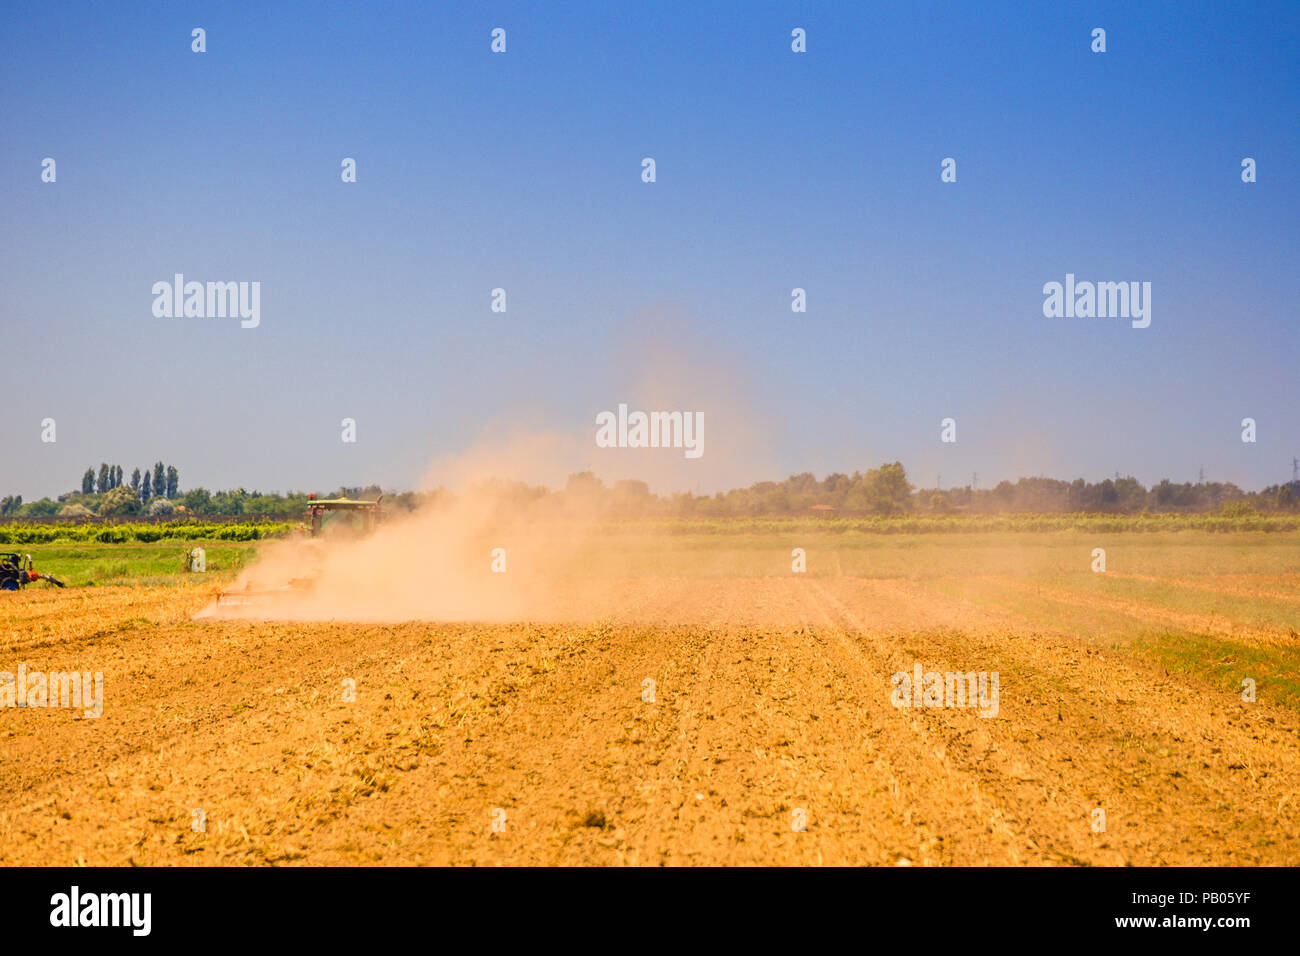 Le tracteur est à labourer le champ dans un nuage de poussière dans un jour d'été torride Banque D'Images